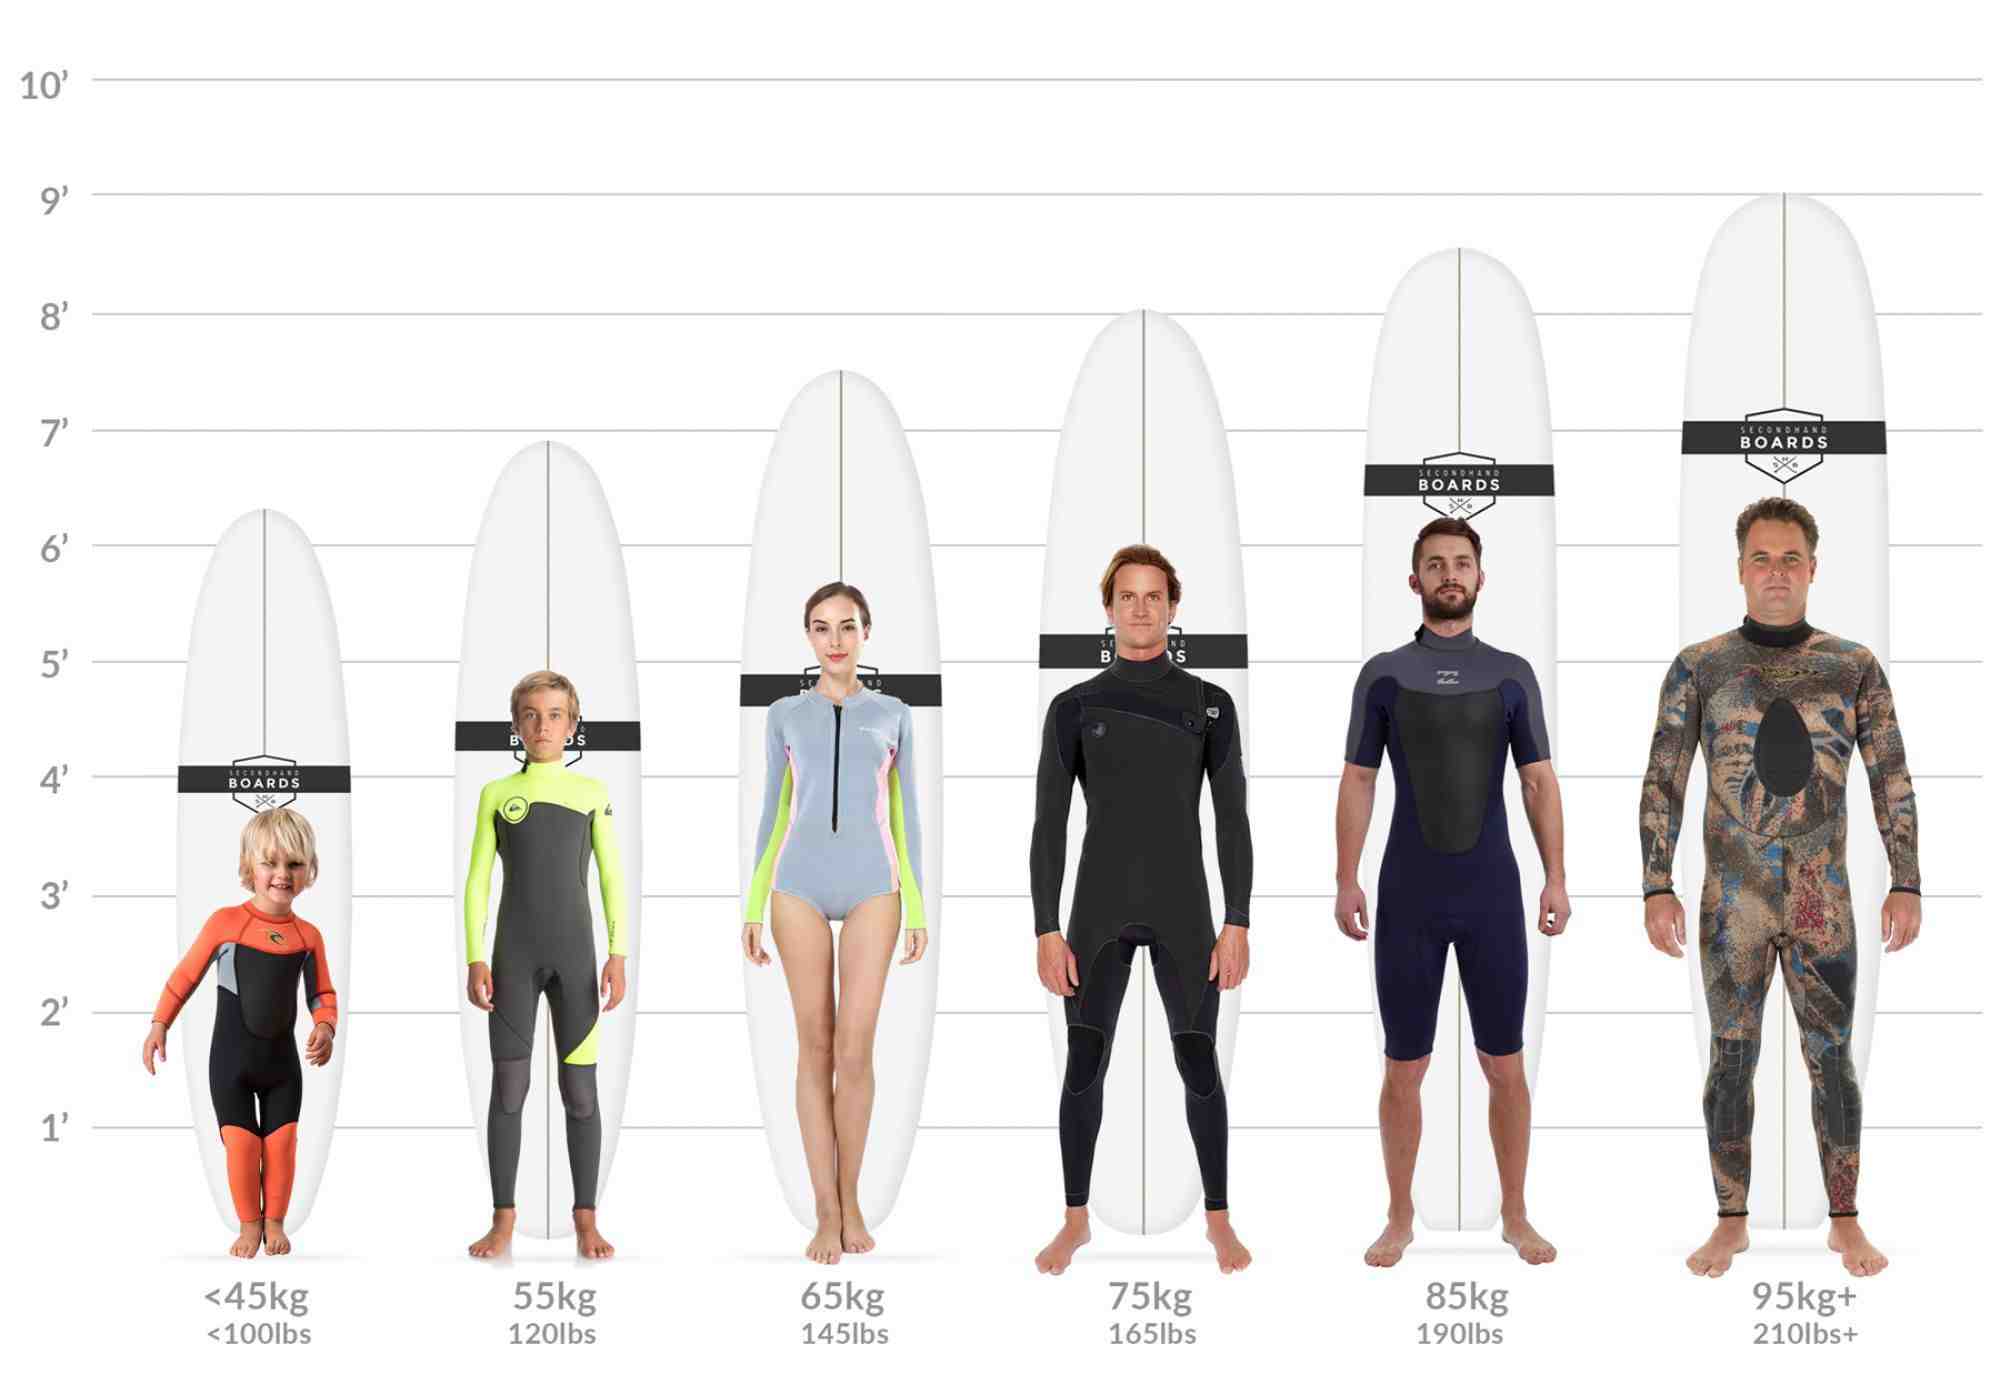 Quelle planche de surf pour petites vagues ?